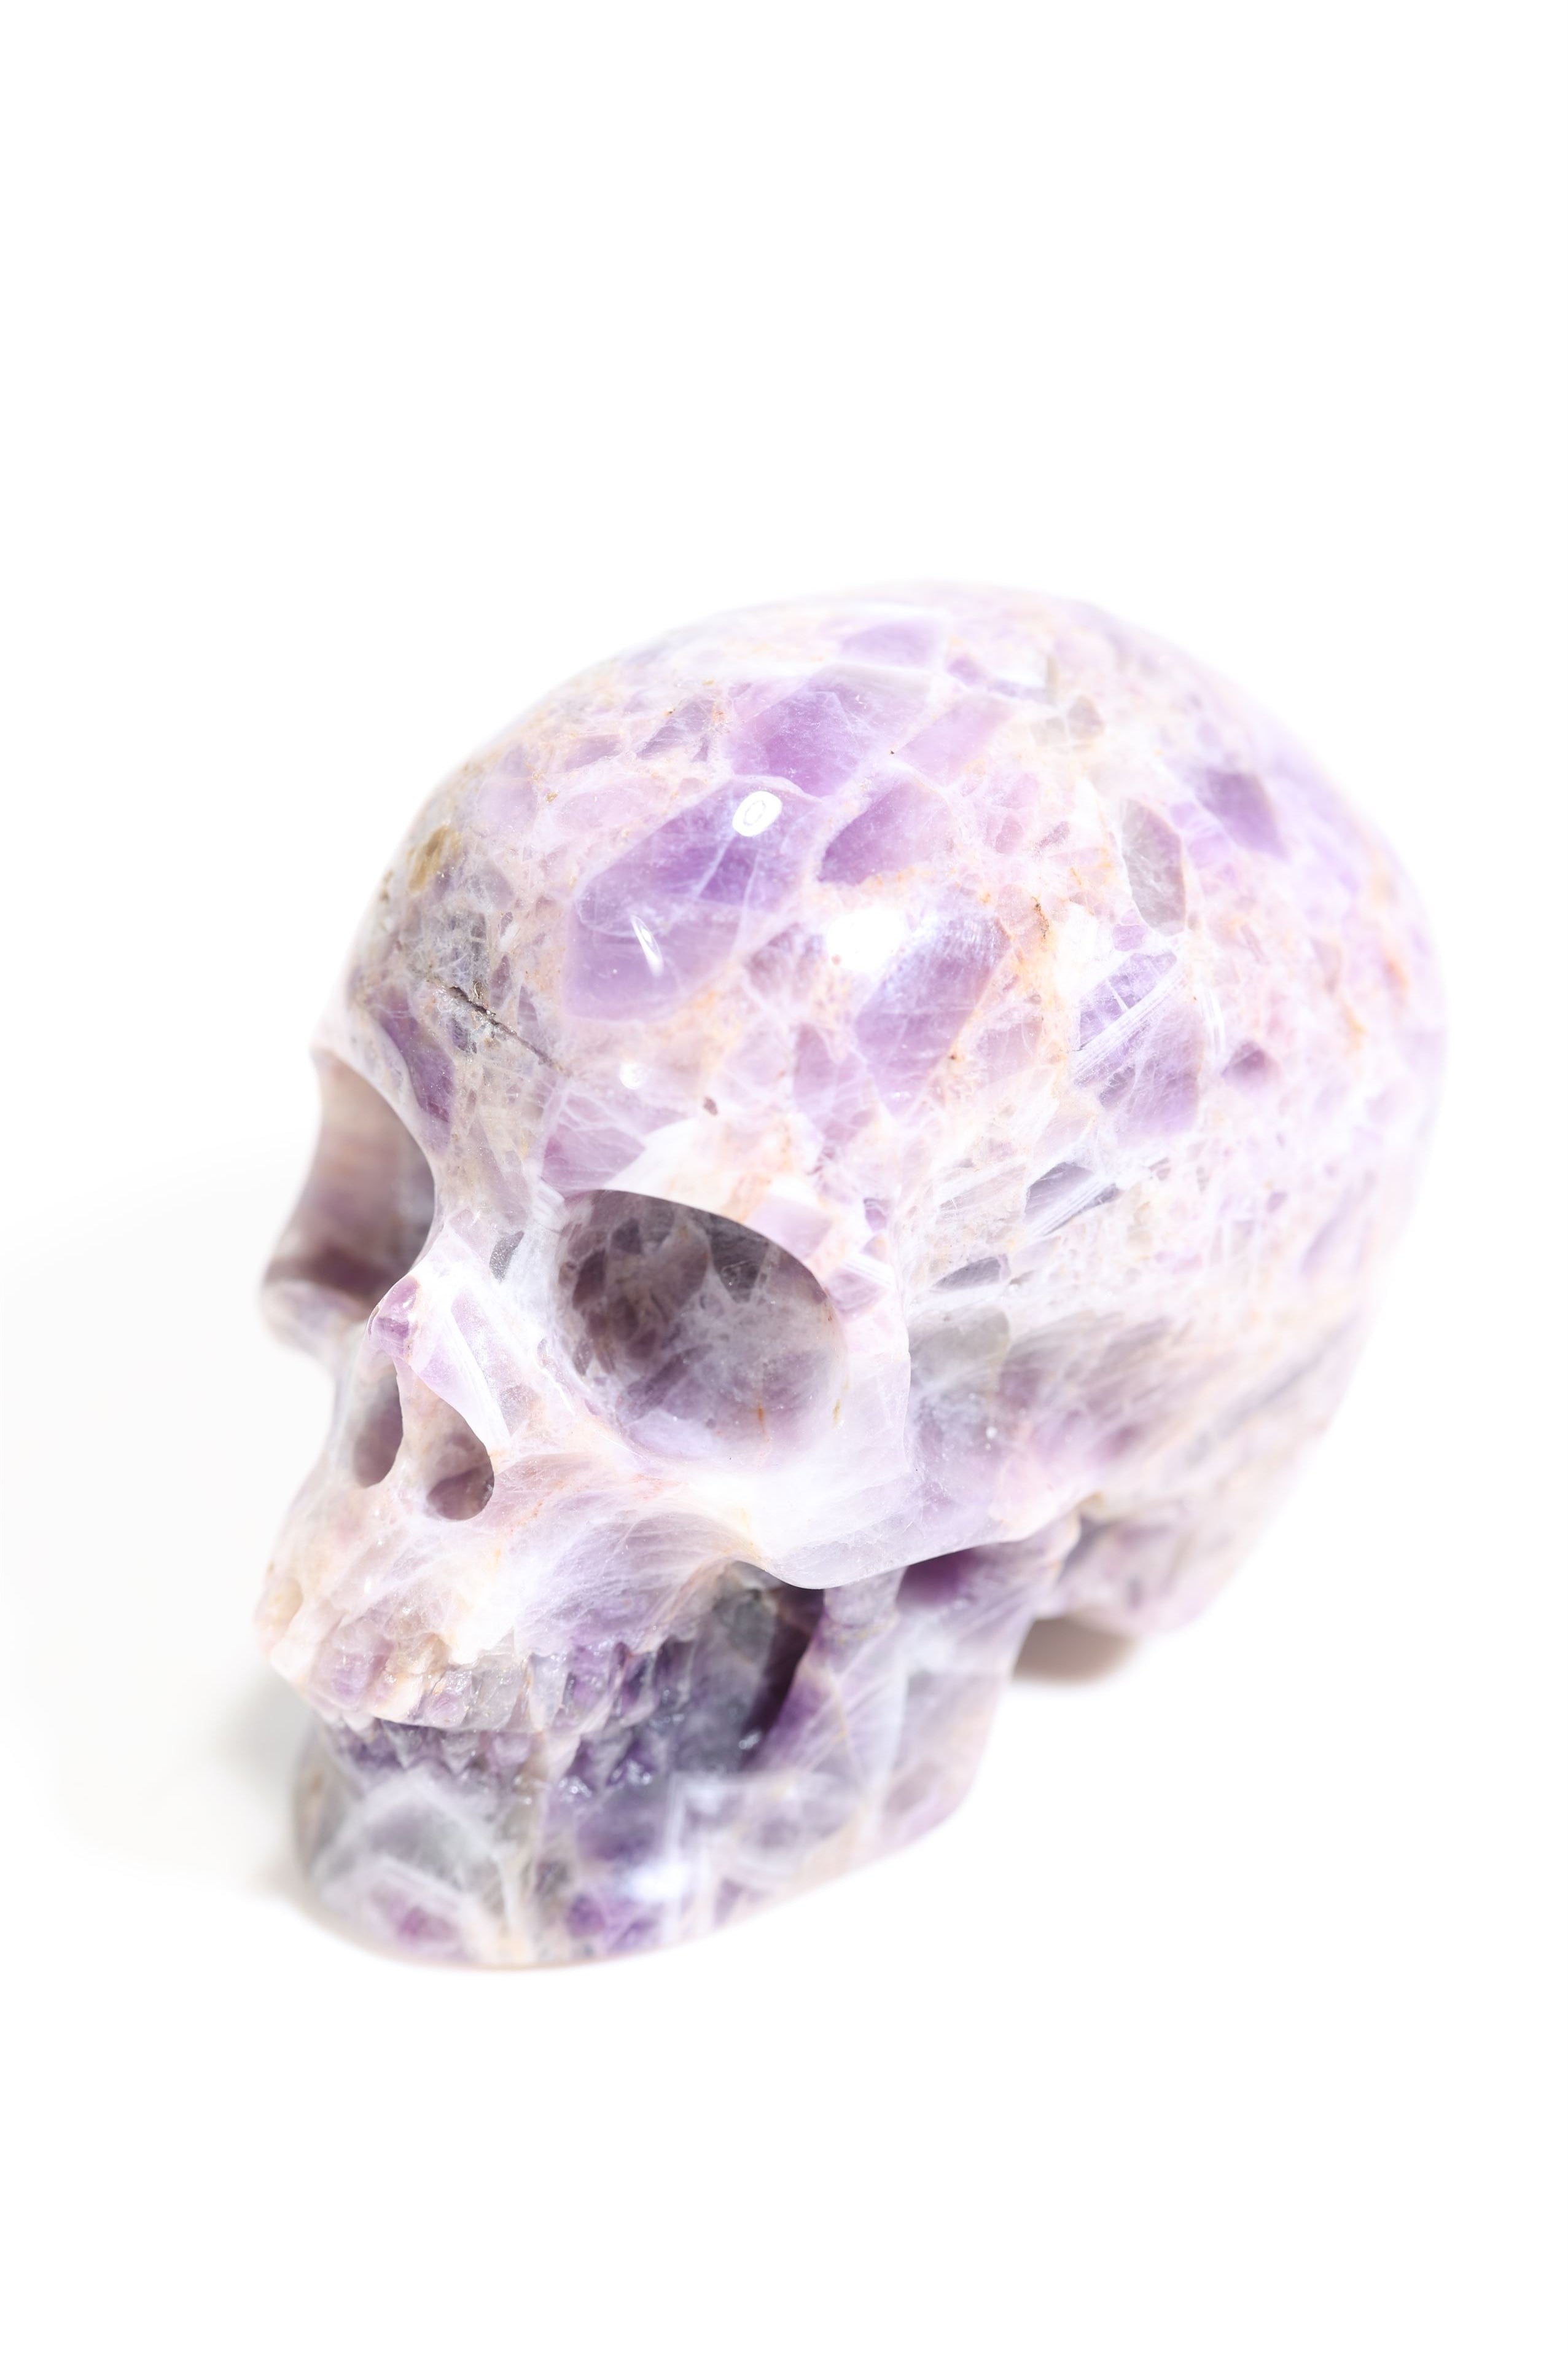 Chevron Amethyst 2" Skull - Forgotten Rarities